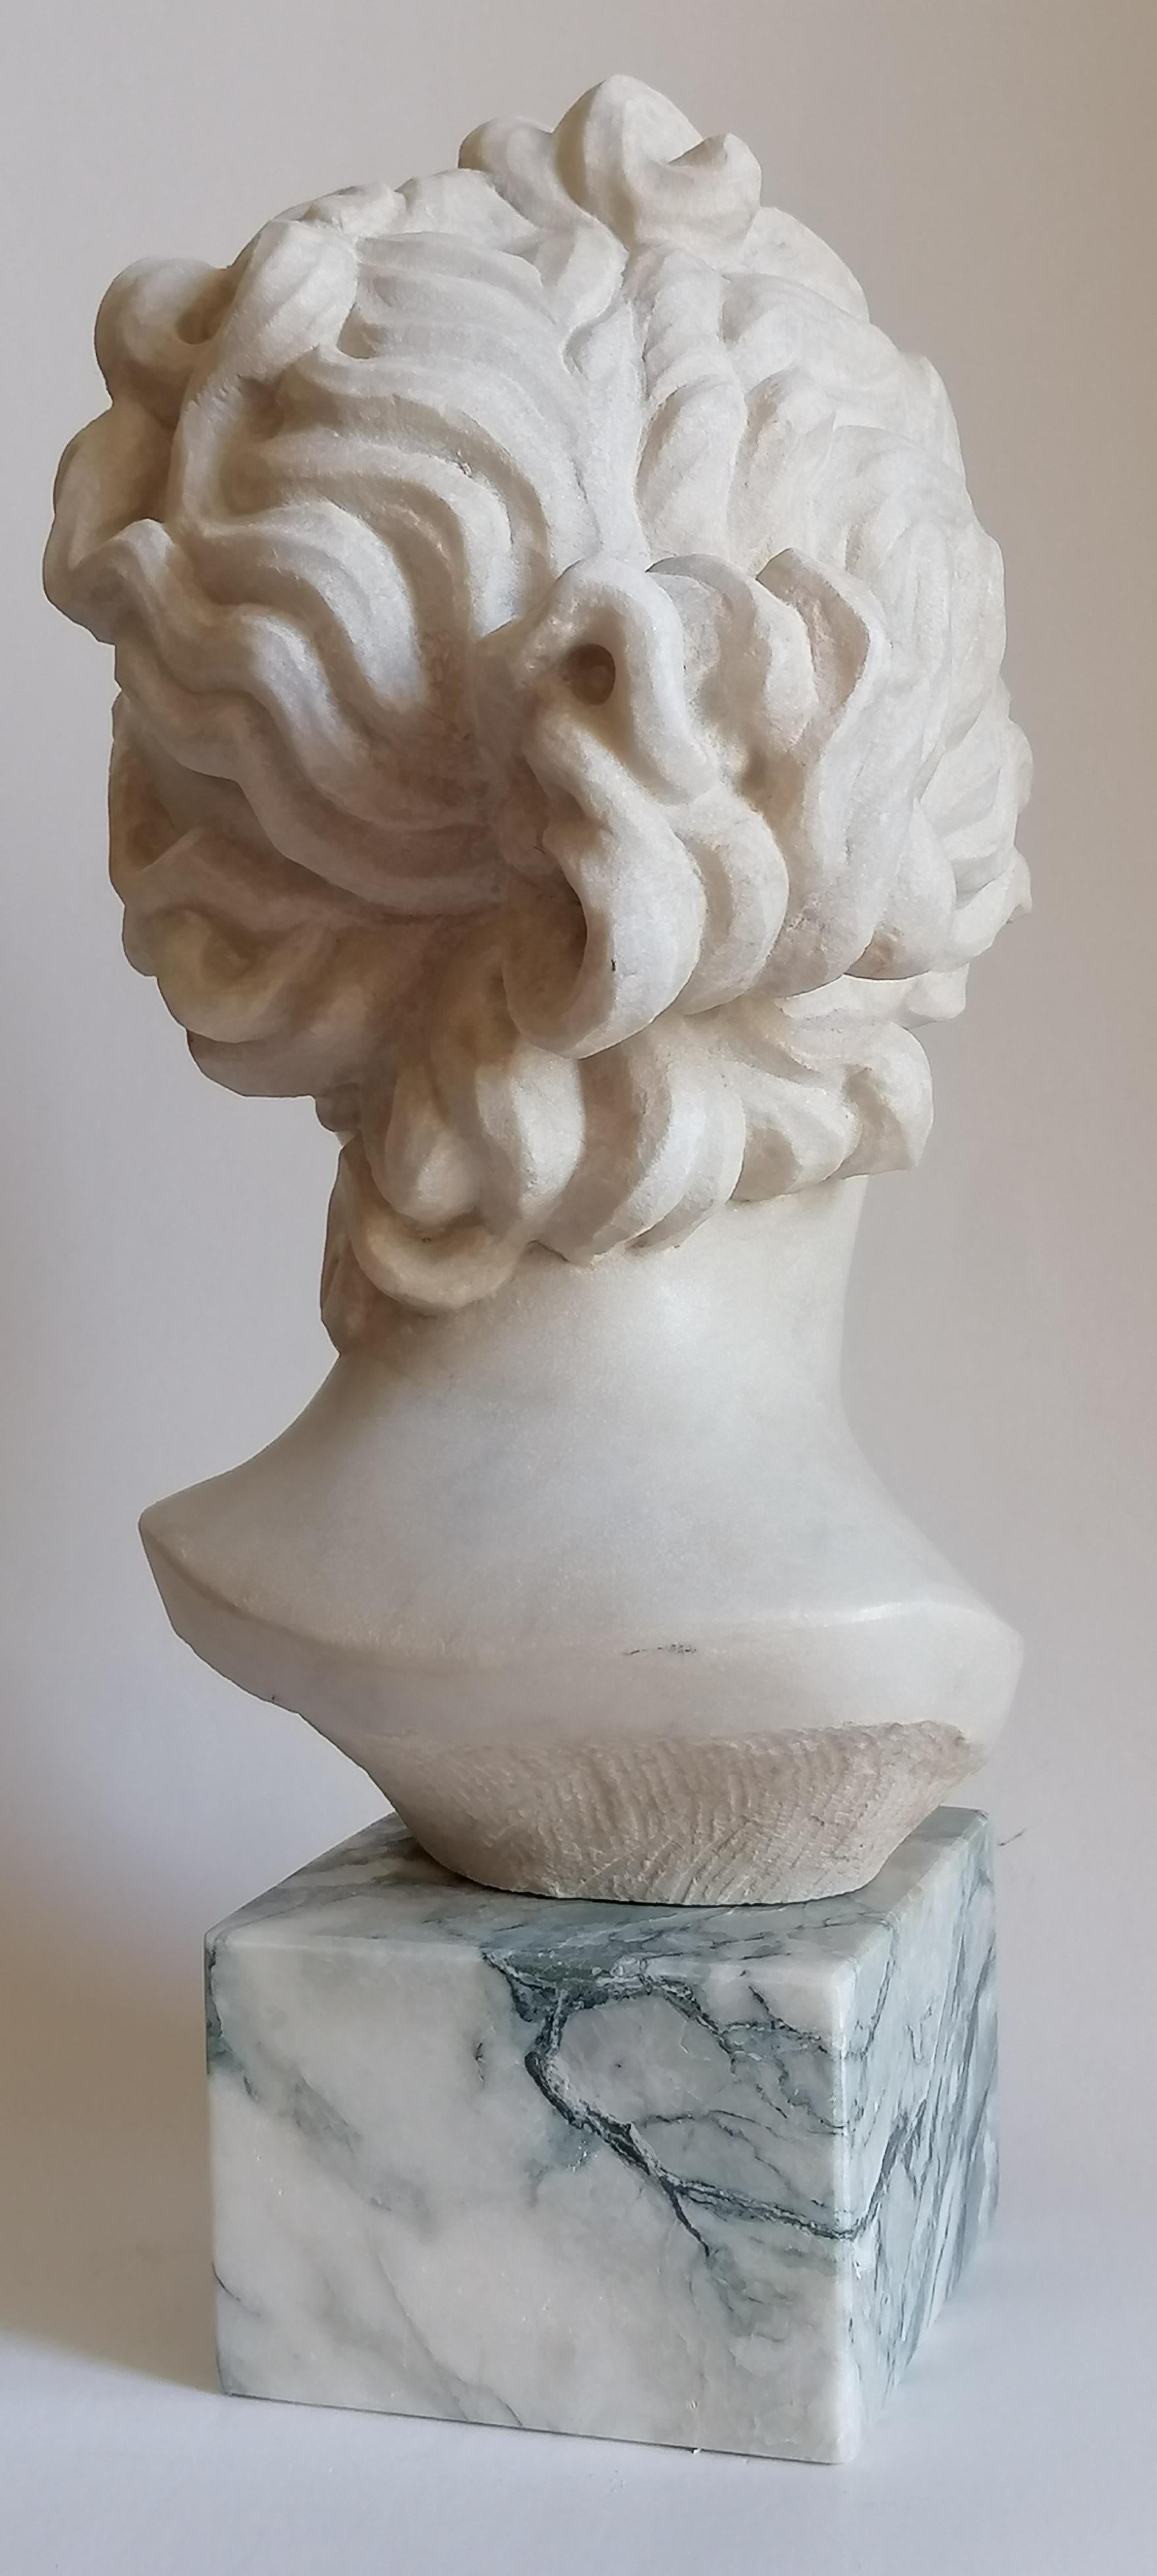 Hand-Crafted Venere Medici -testa scolpita su marmo bianco di Carrara -made in Italy For Sale